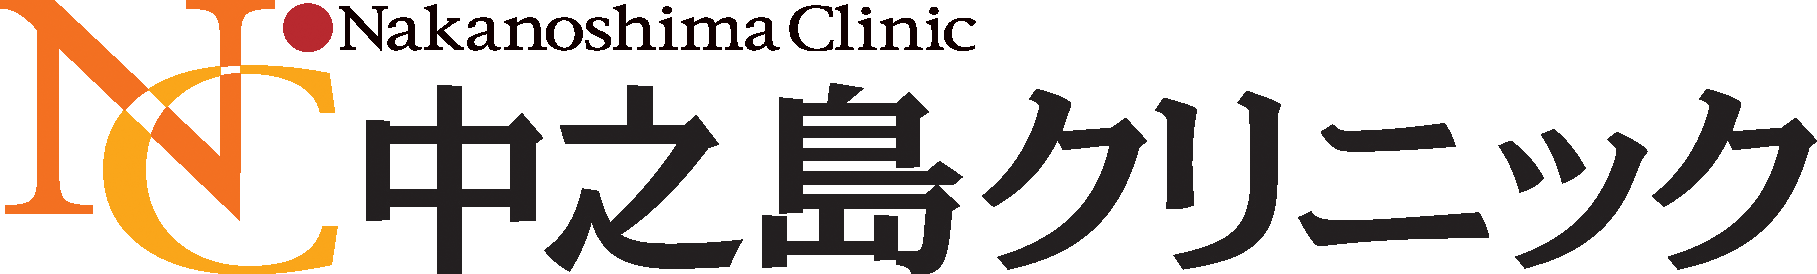 Nakanoshima Clinic